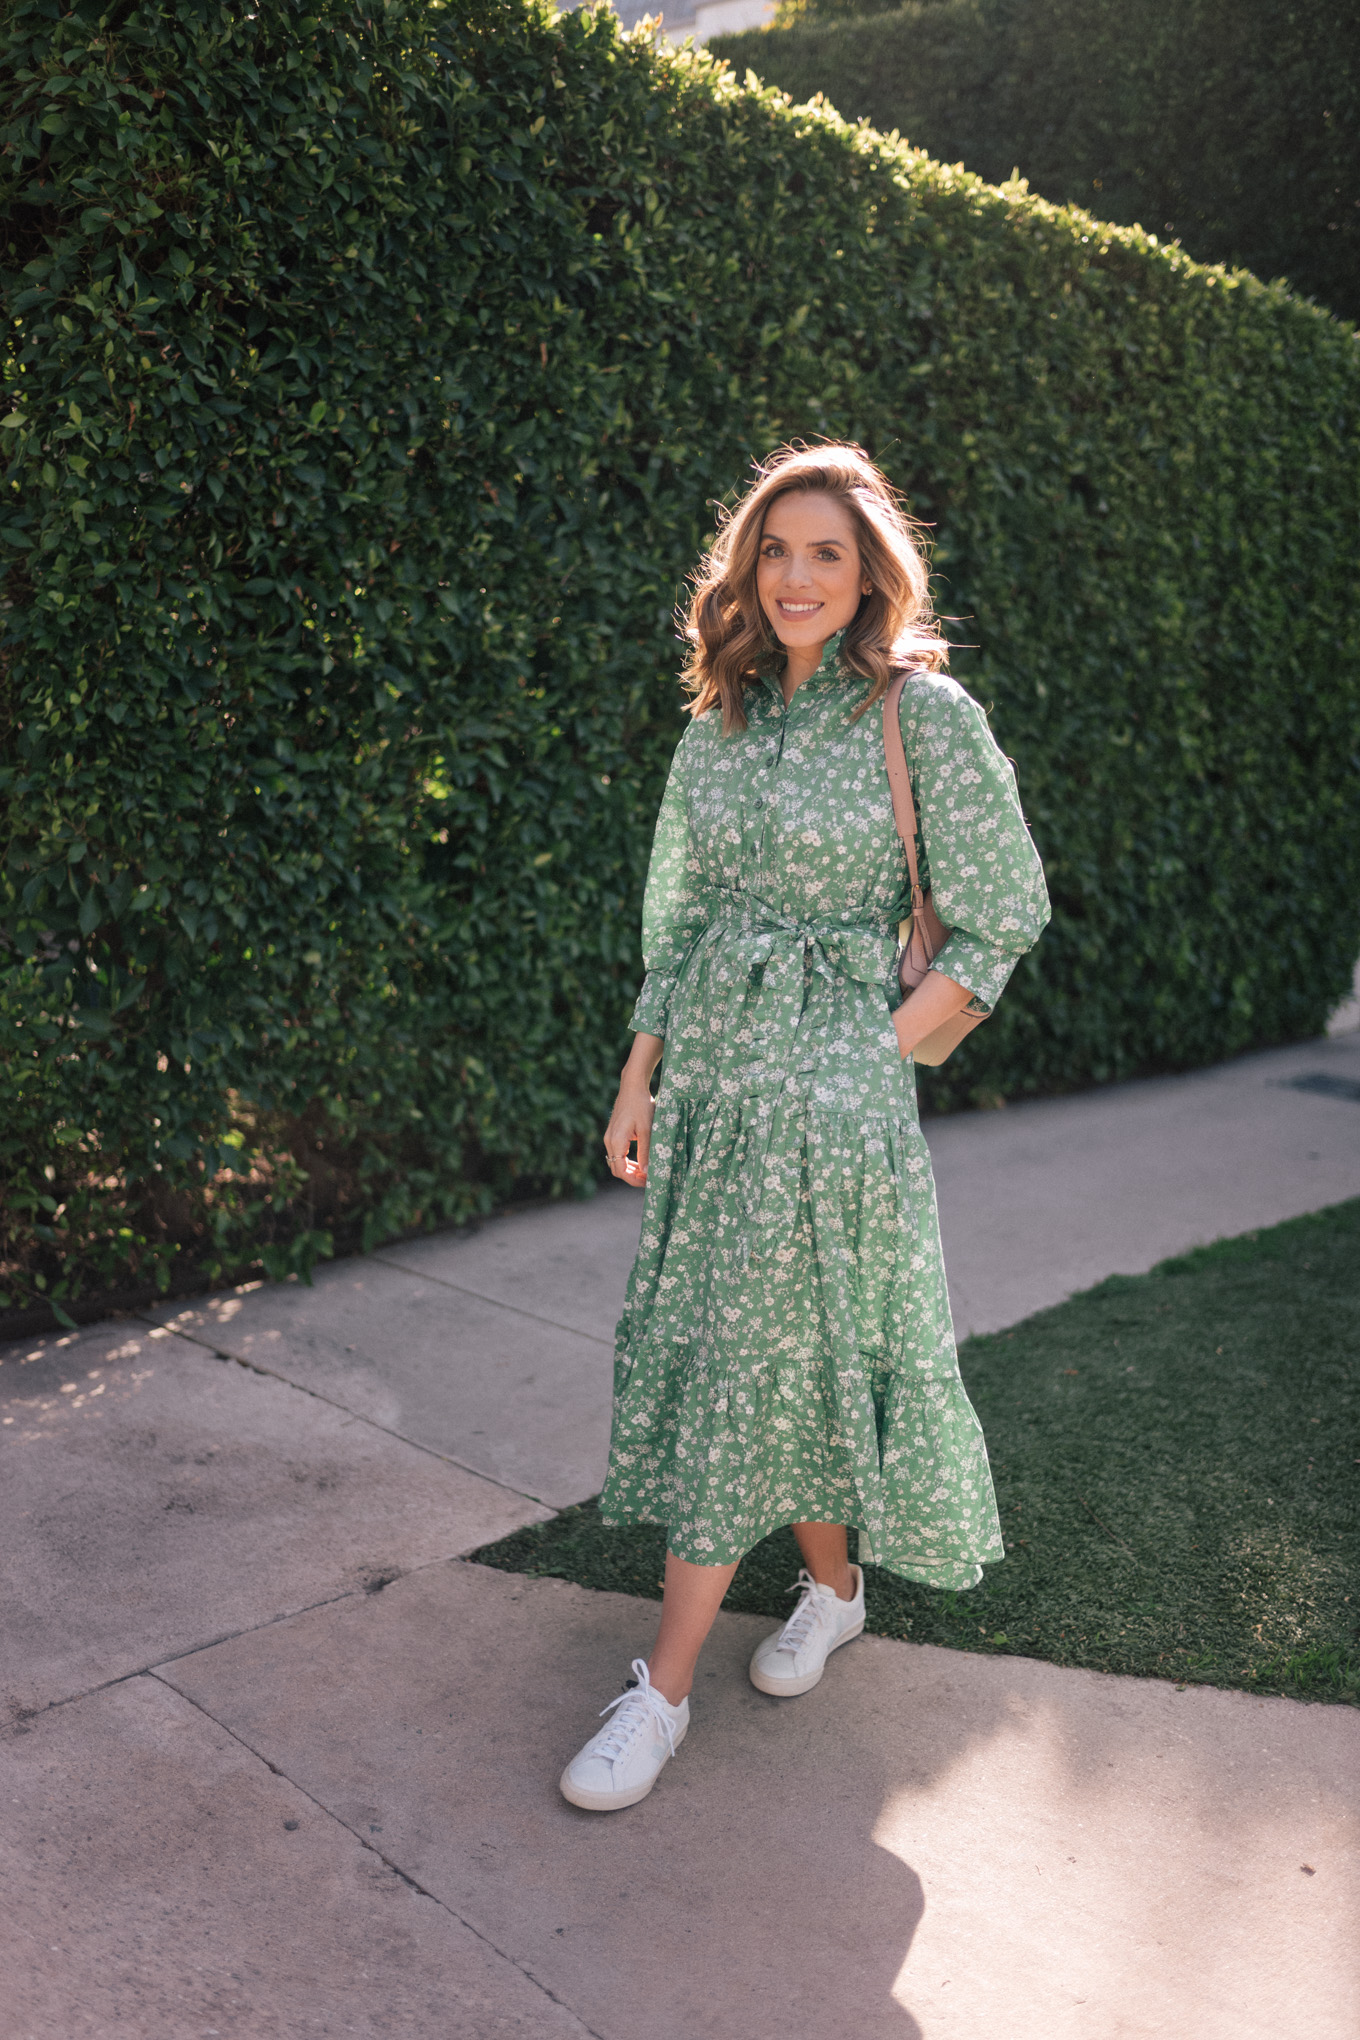 A Green and Floral Shirtdress California - Julia Berolzheimer